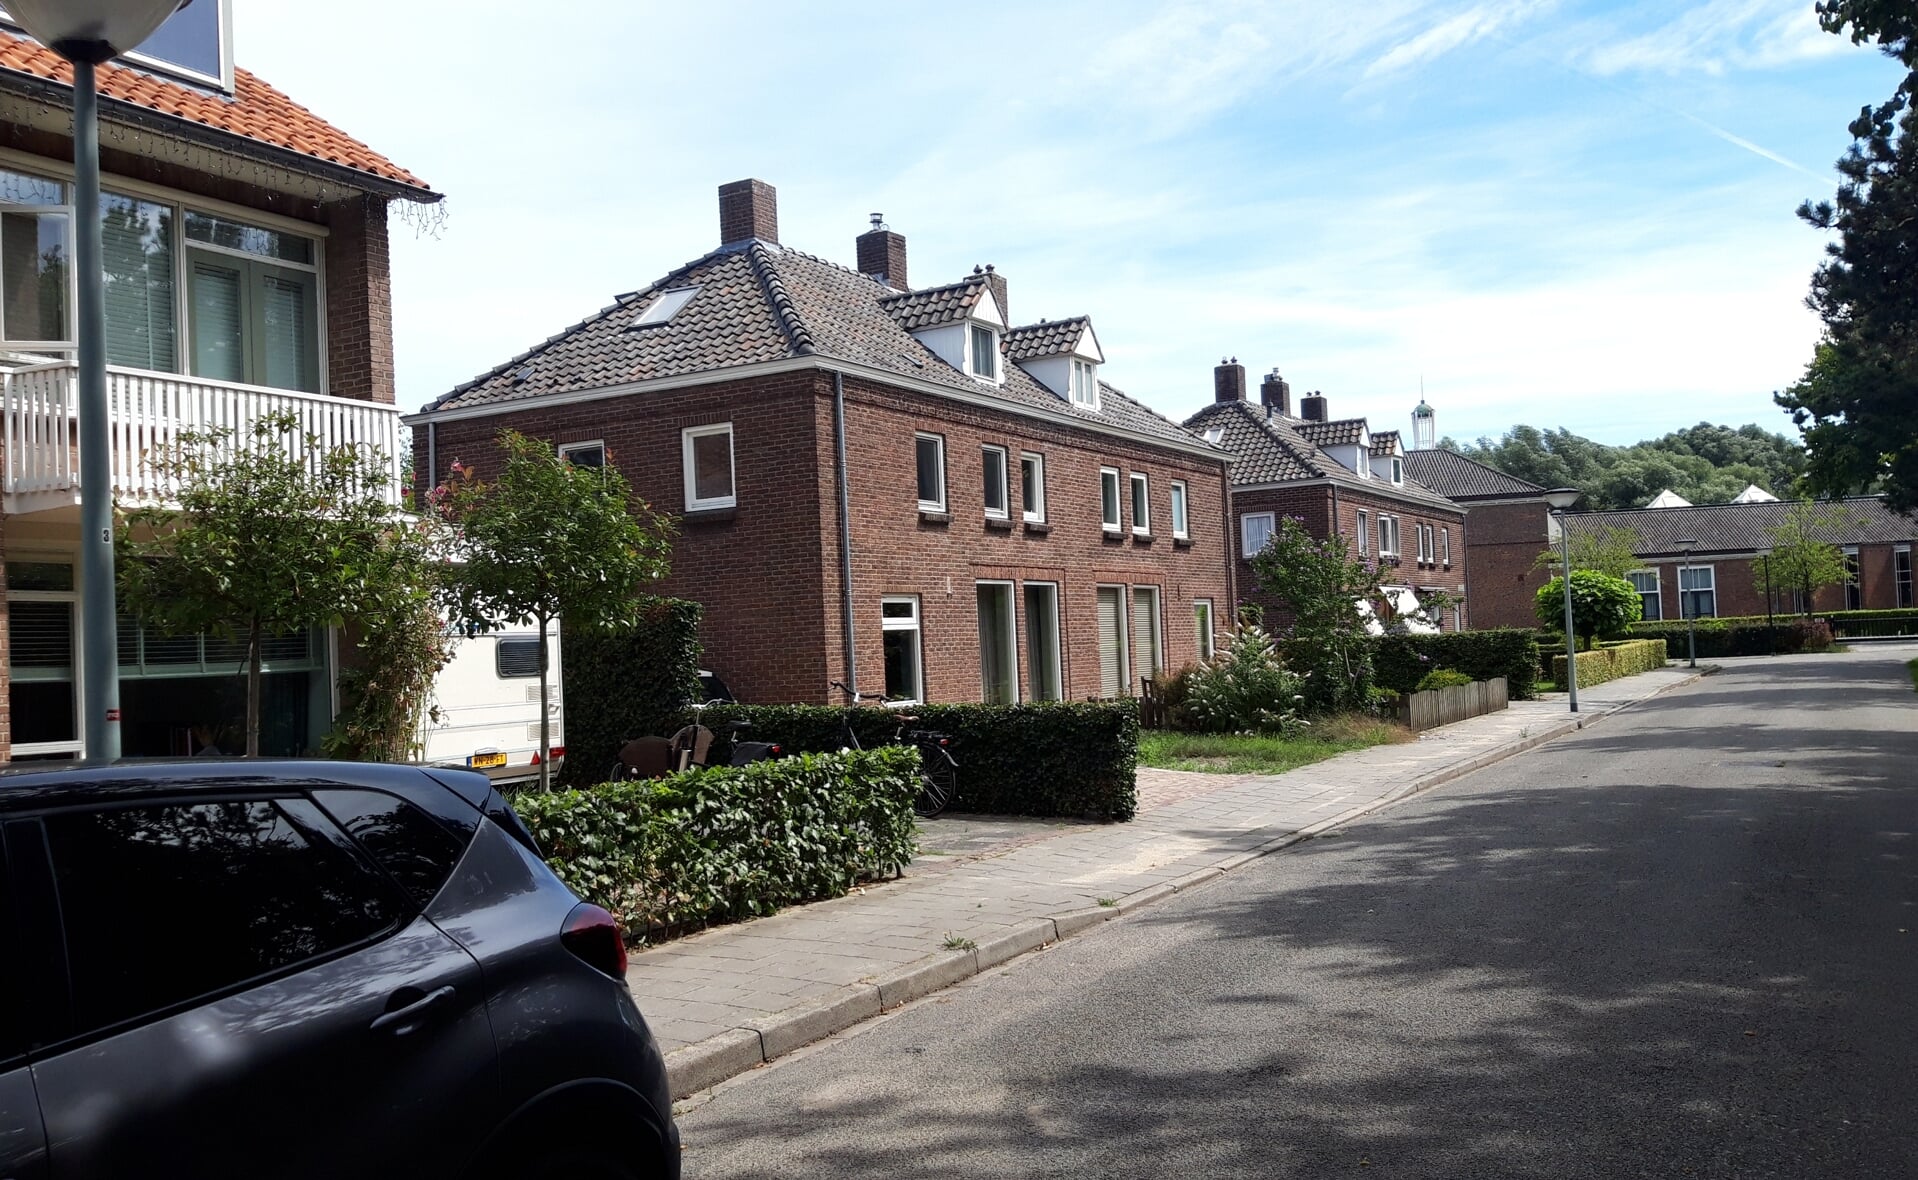 De woningen aan de Jacob-Roelandsstraat dateren uit de jaren vijftig en komen in aanmerking voor een beschermde status op de gemeentelijke monumentenlijst.